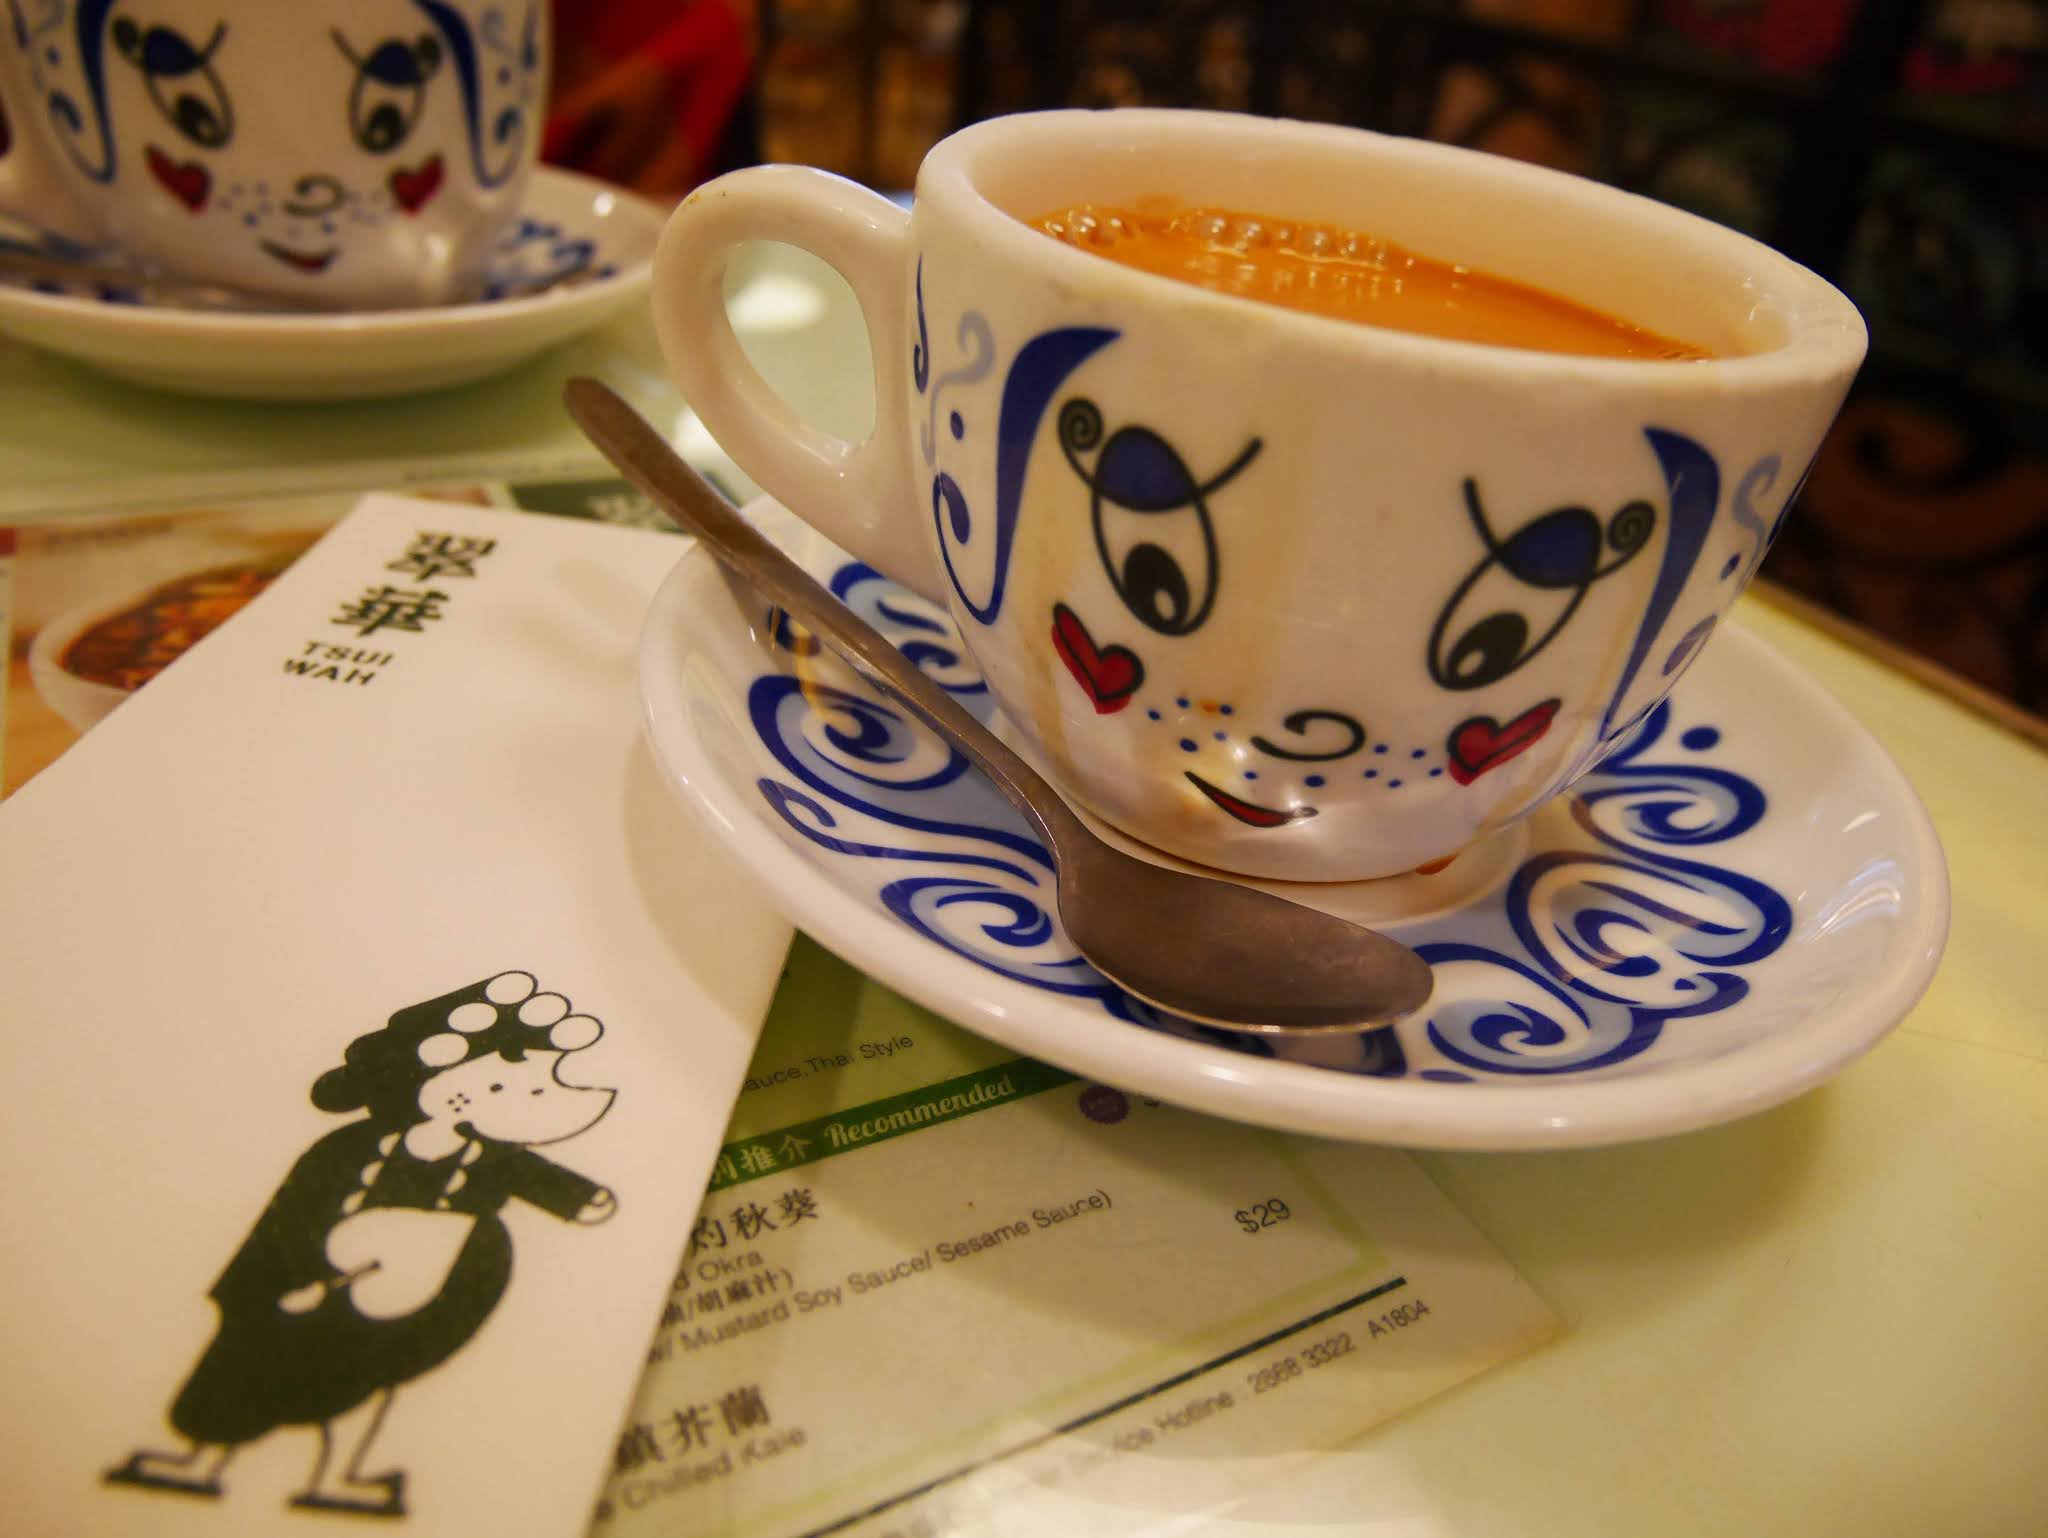 Tsui Wah's famous Hong Kong milk tea